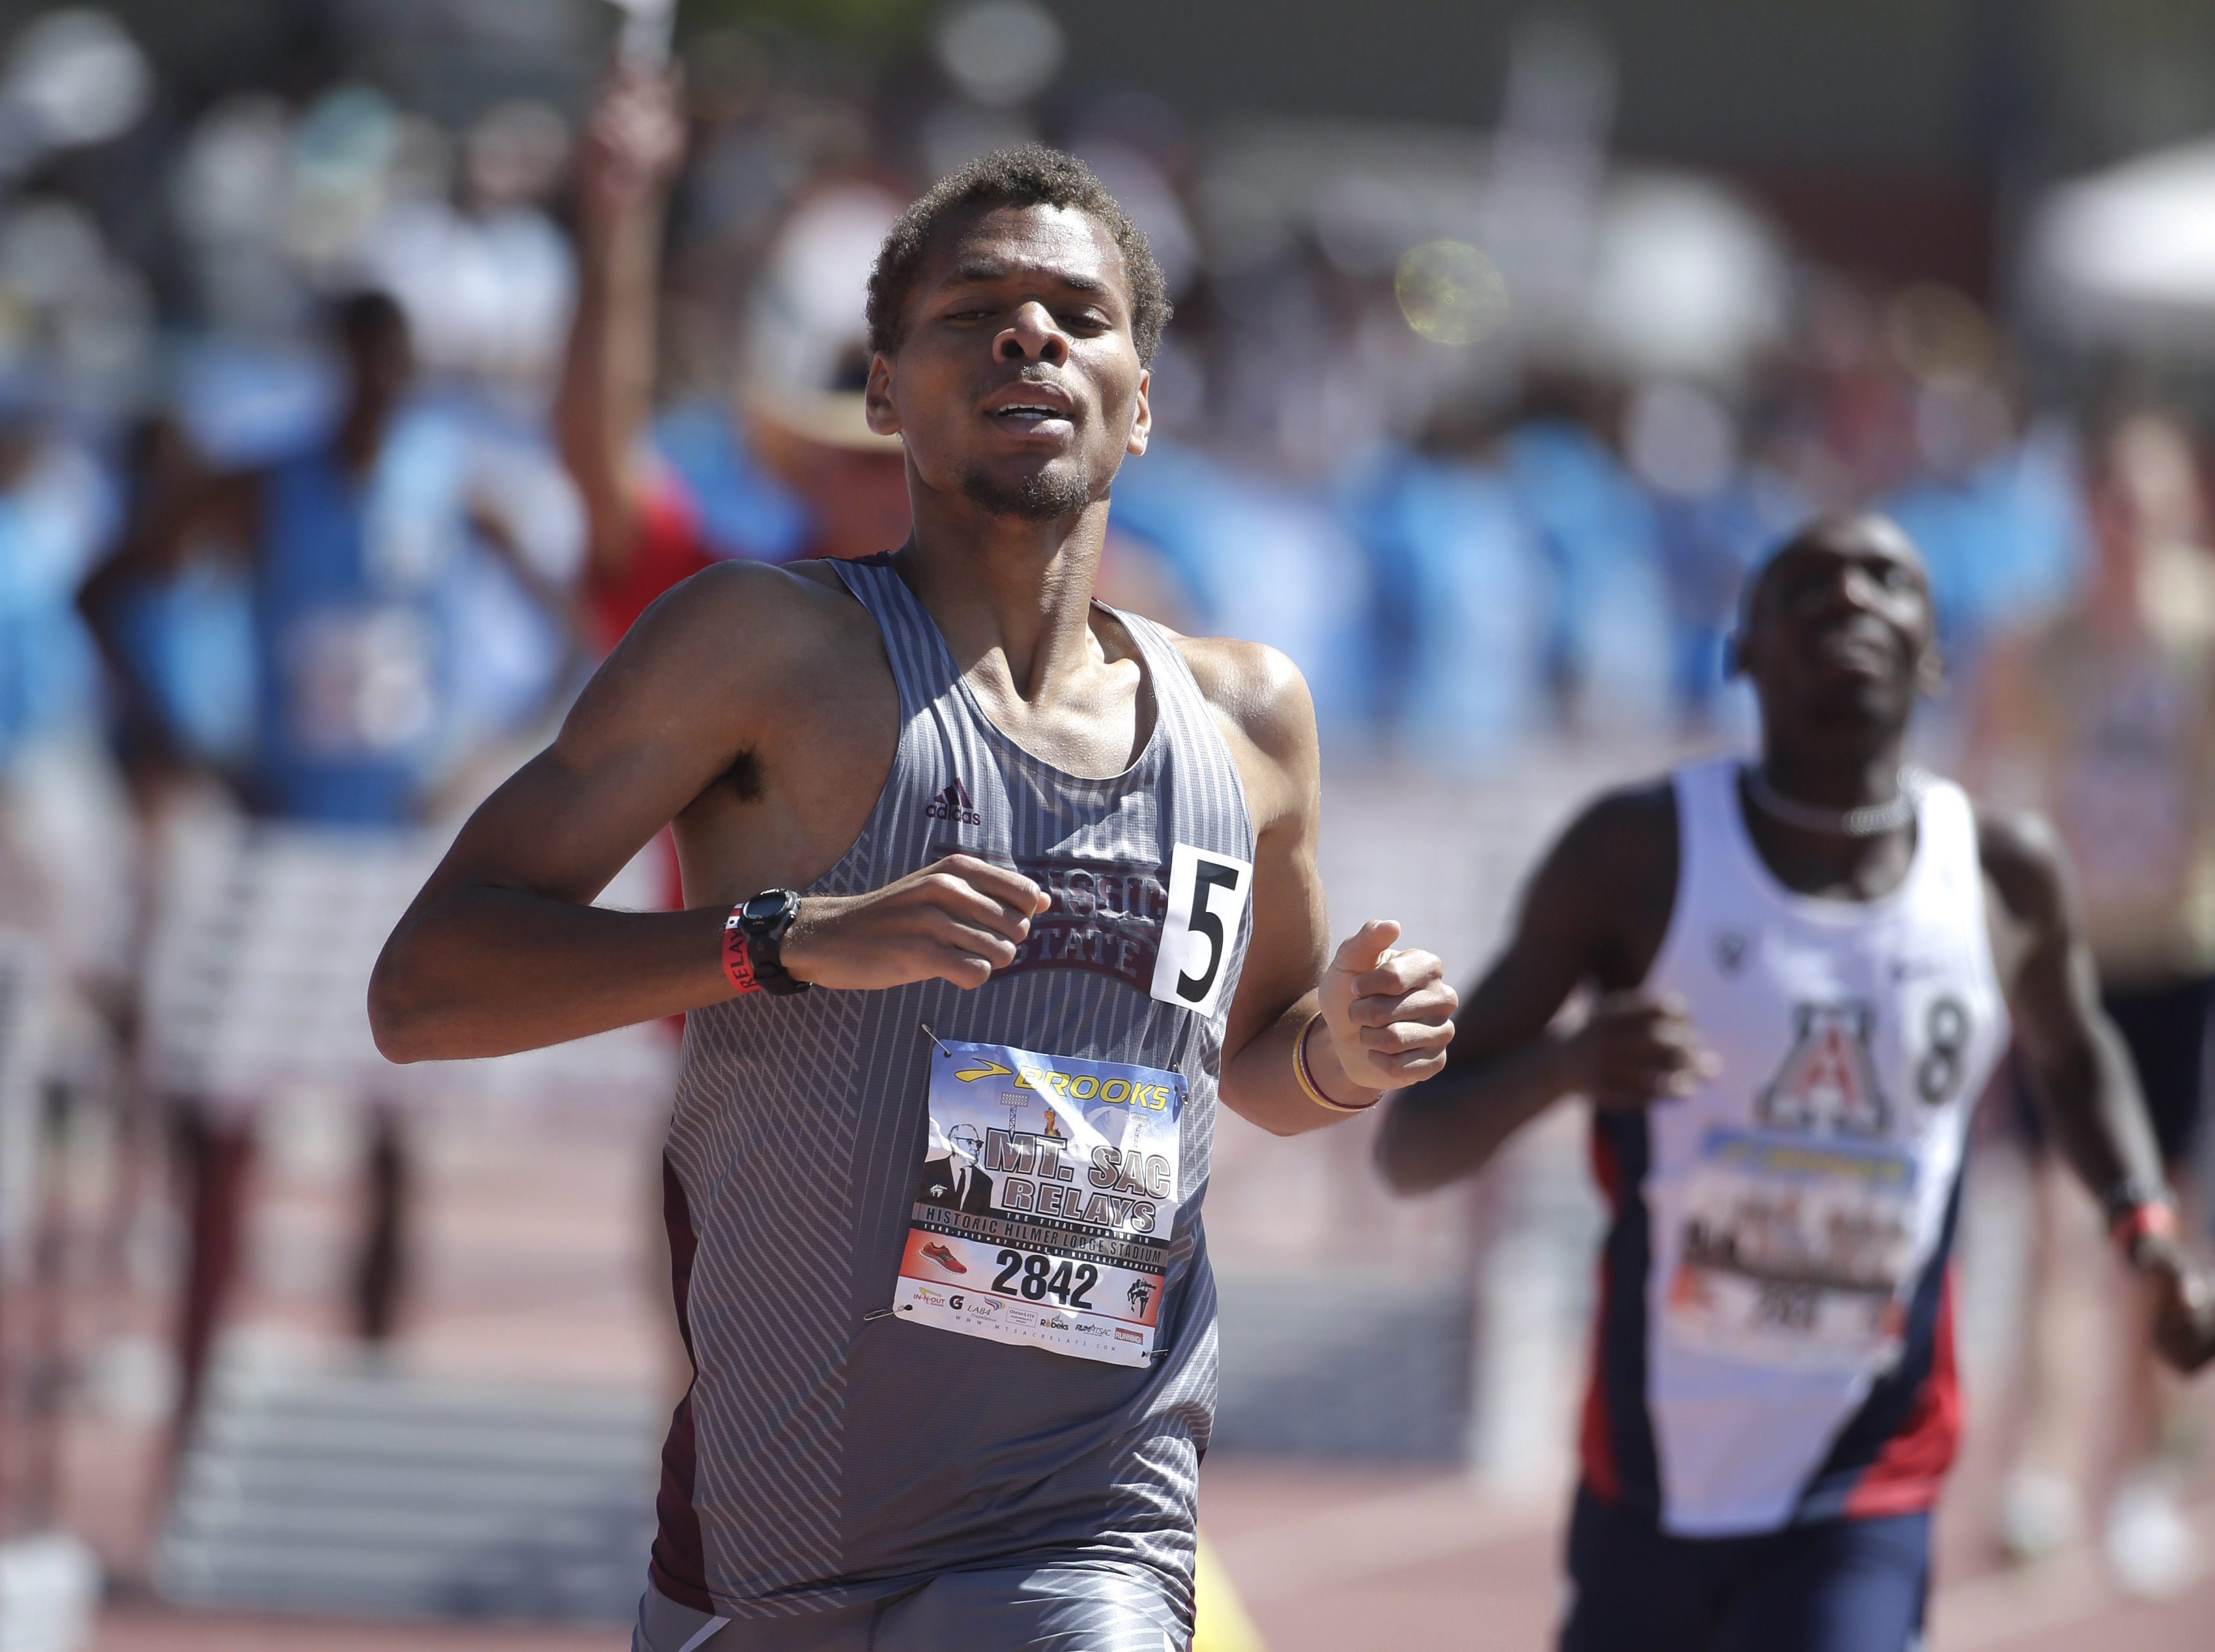 Brandon McBride wins the men's 800 meter run at the Mount SAC Relays at Mt. San Antonio College, Saturday, April 18, 2015, in Walnut, Calif. (AP Photo/Jae C. Hong)